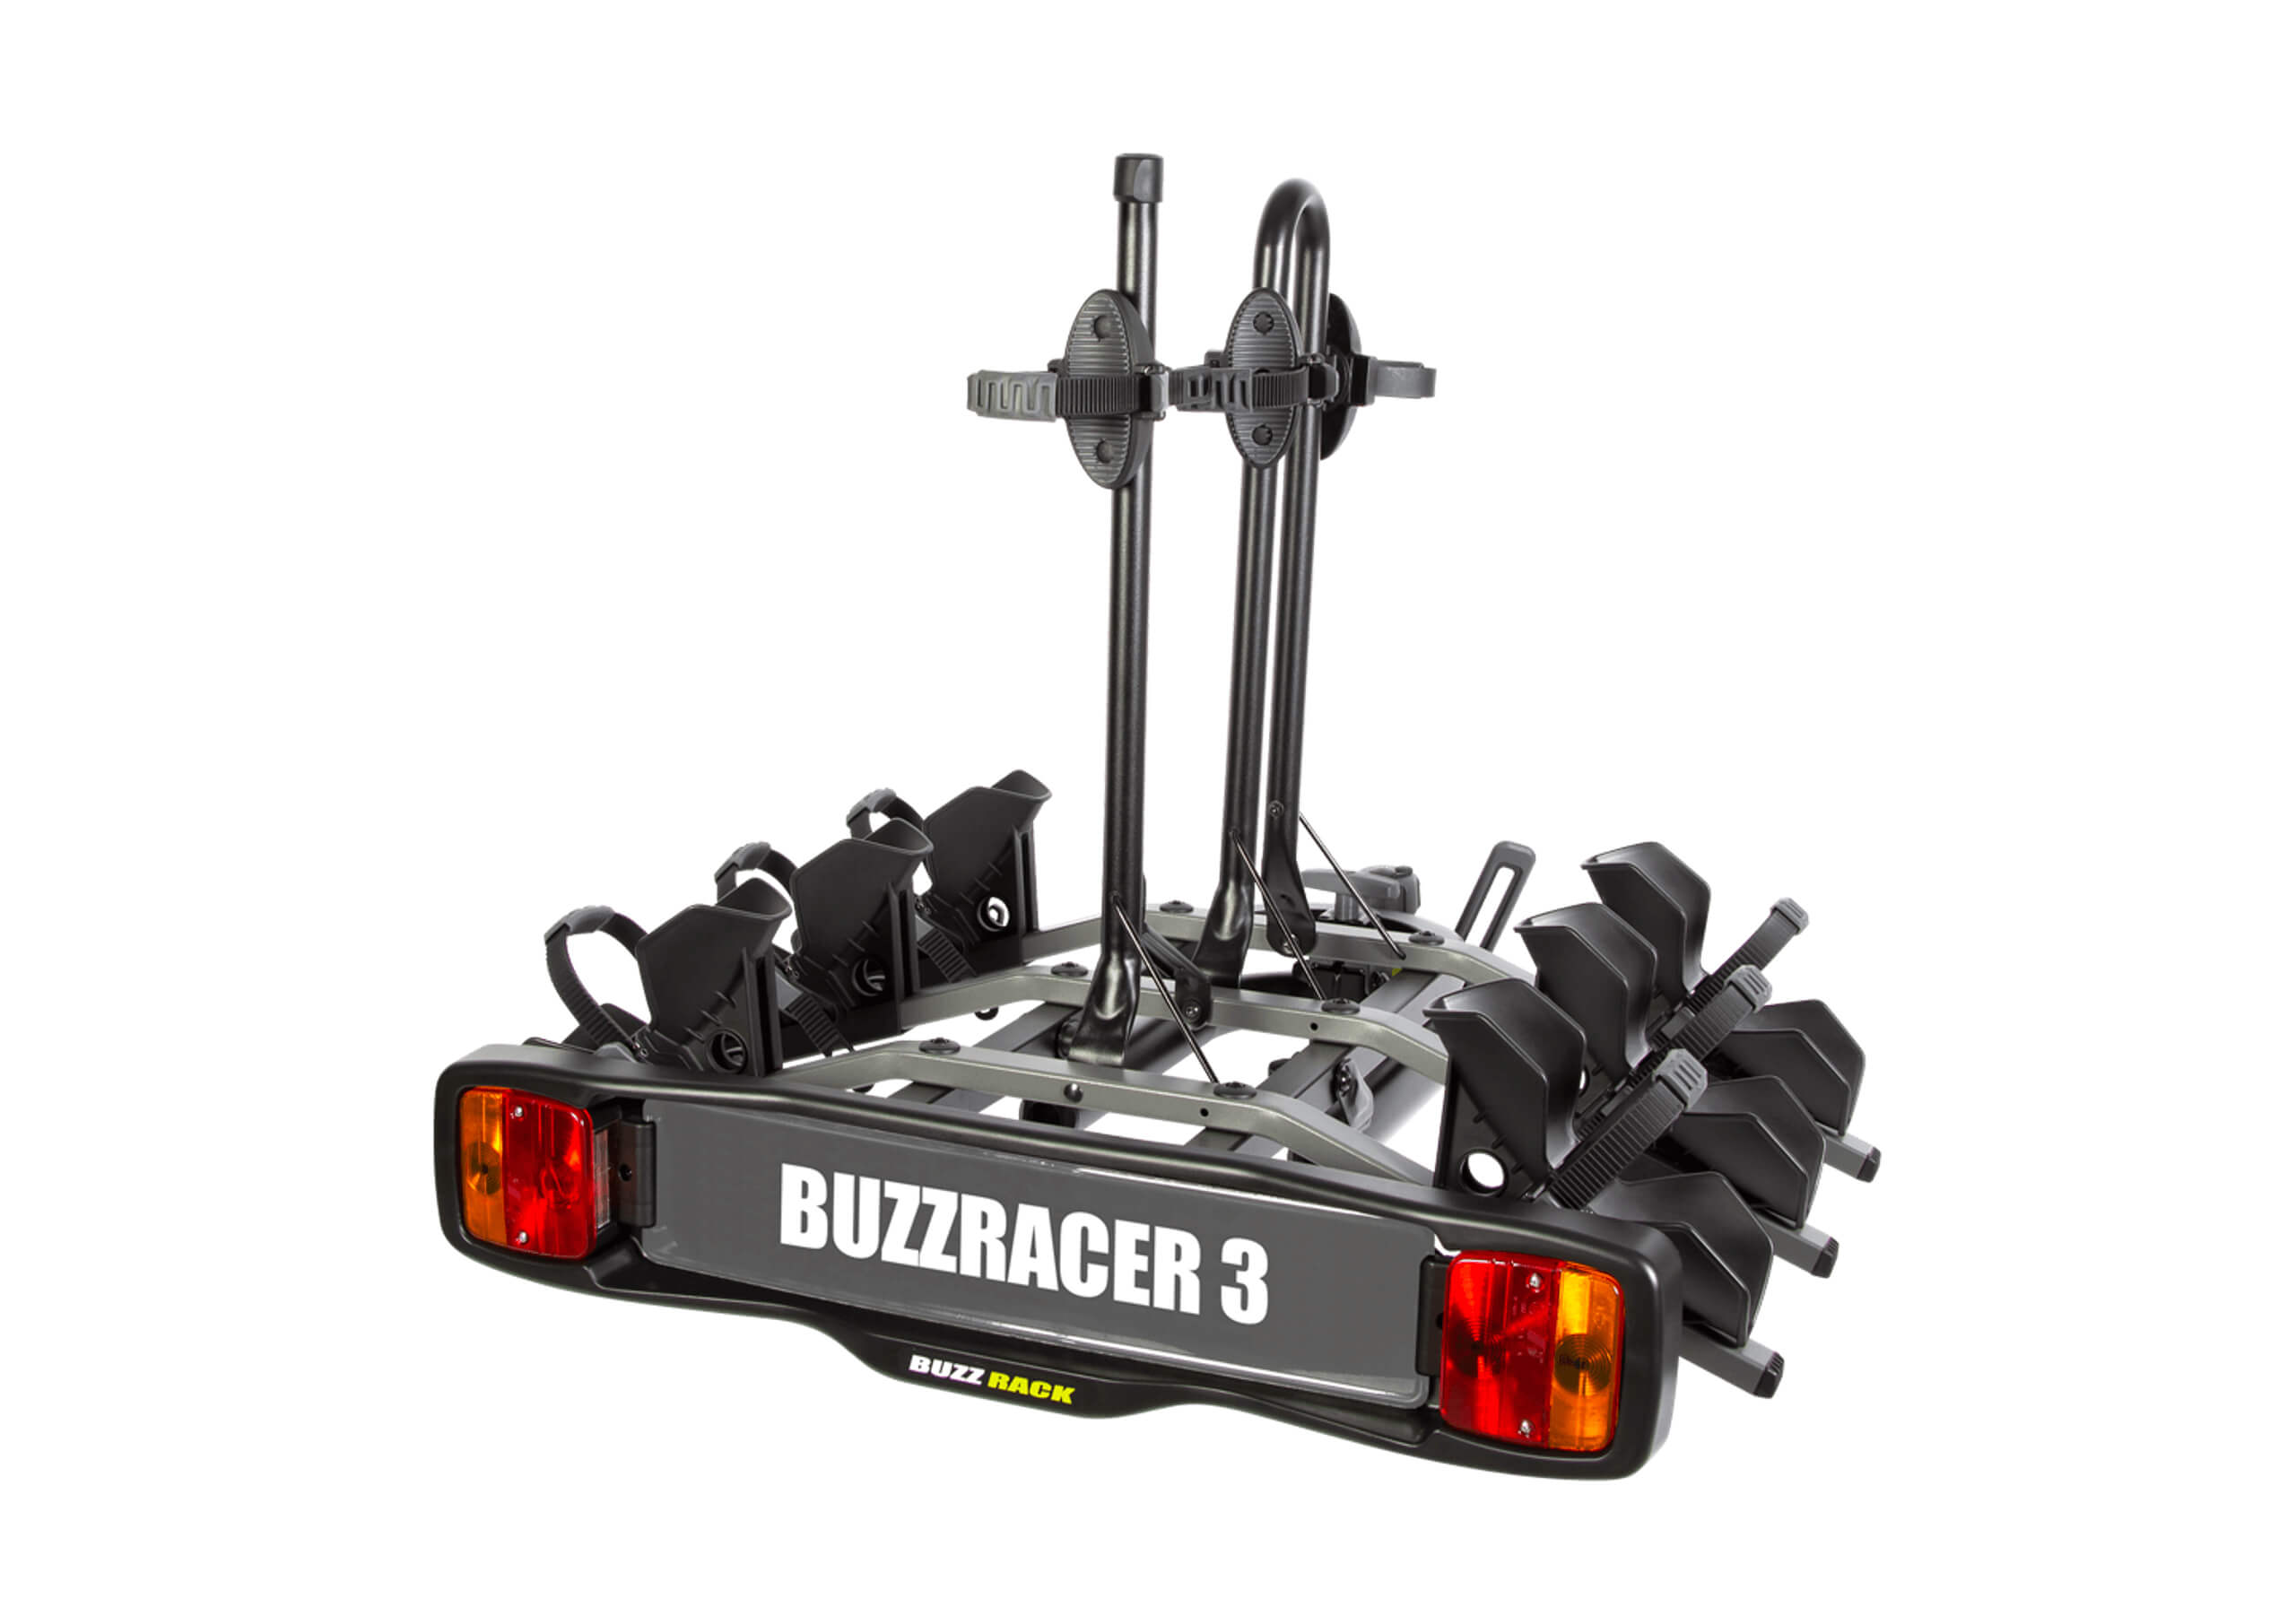 BUZZ RACK:BUZZ RACK BuzzRacer 3 bike wheel support rack no. BRP333